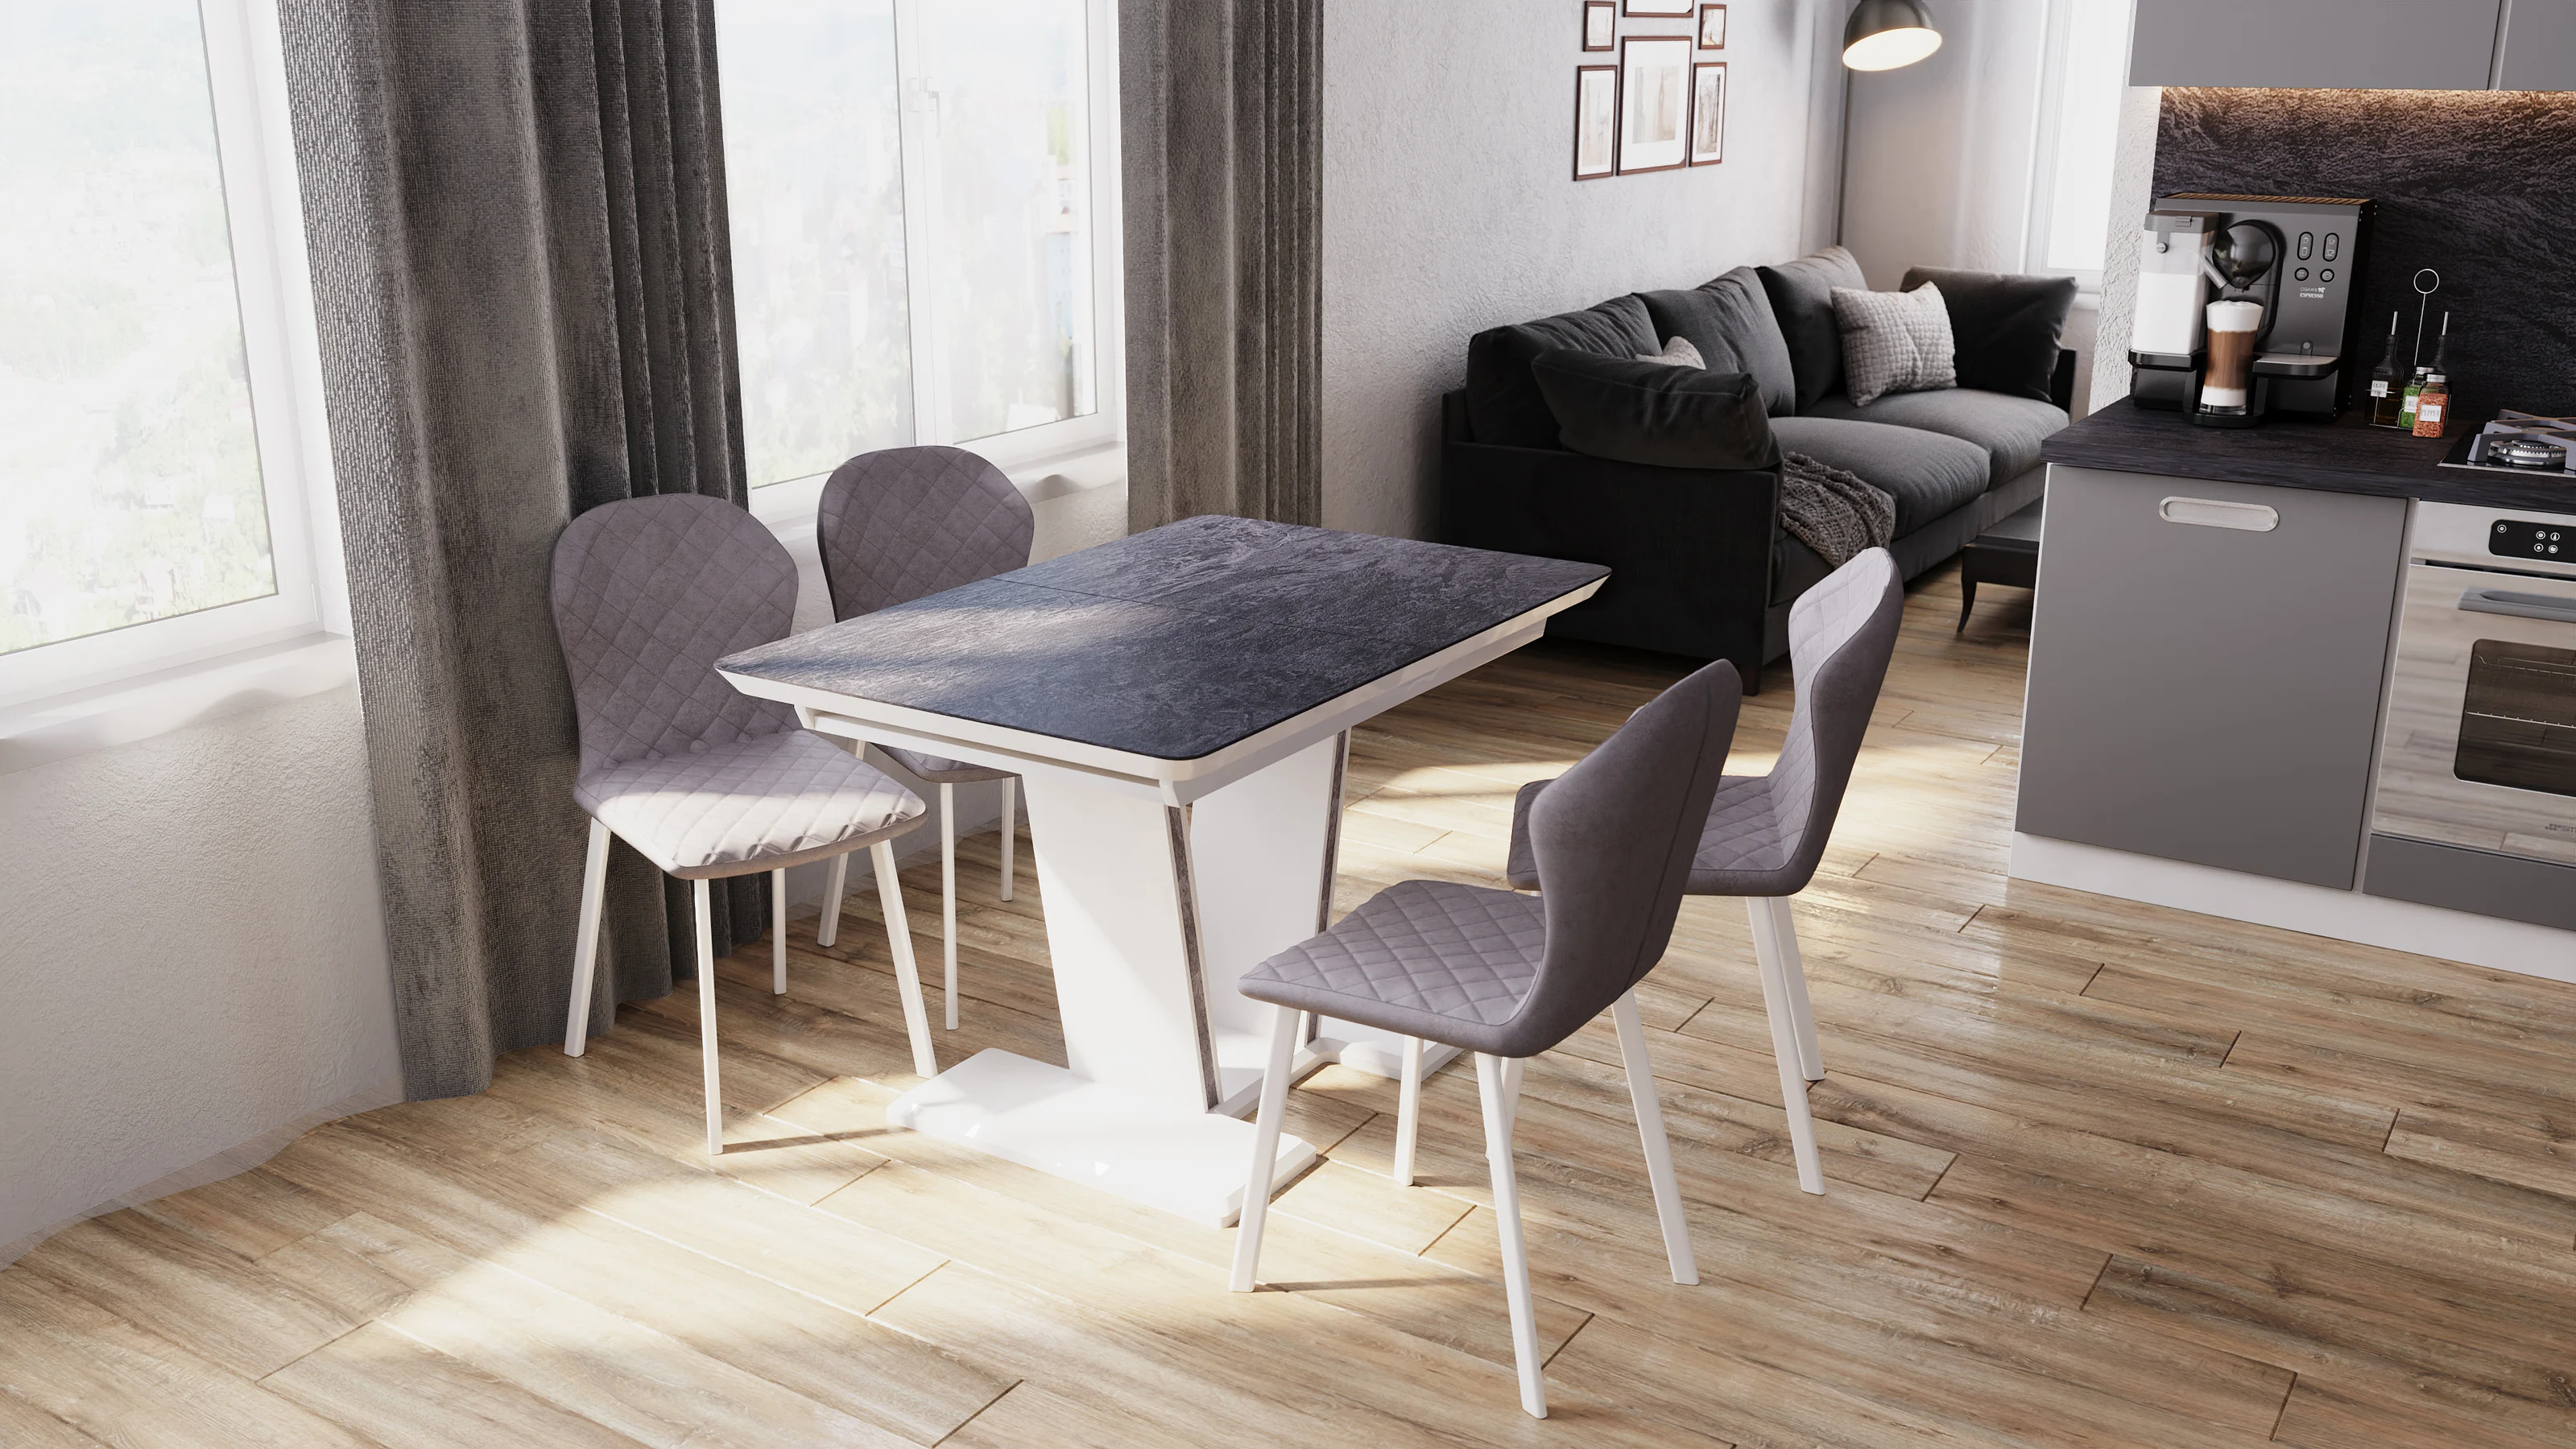 мебель блюз столы и стулья